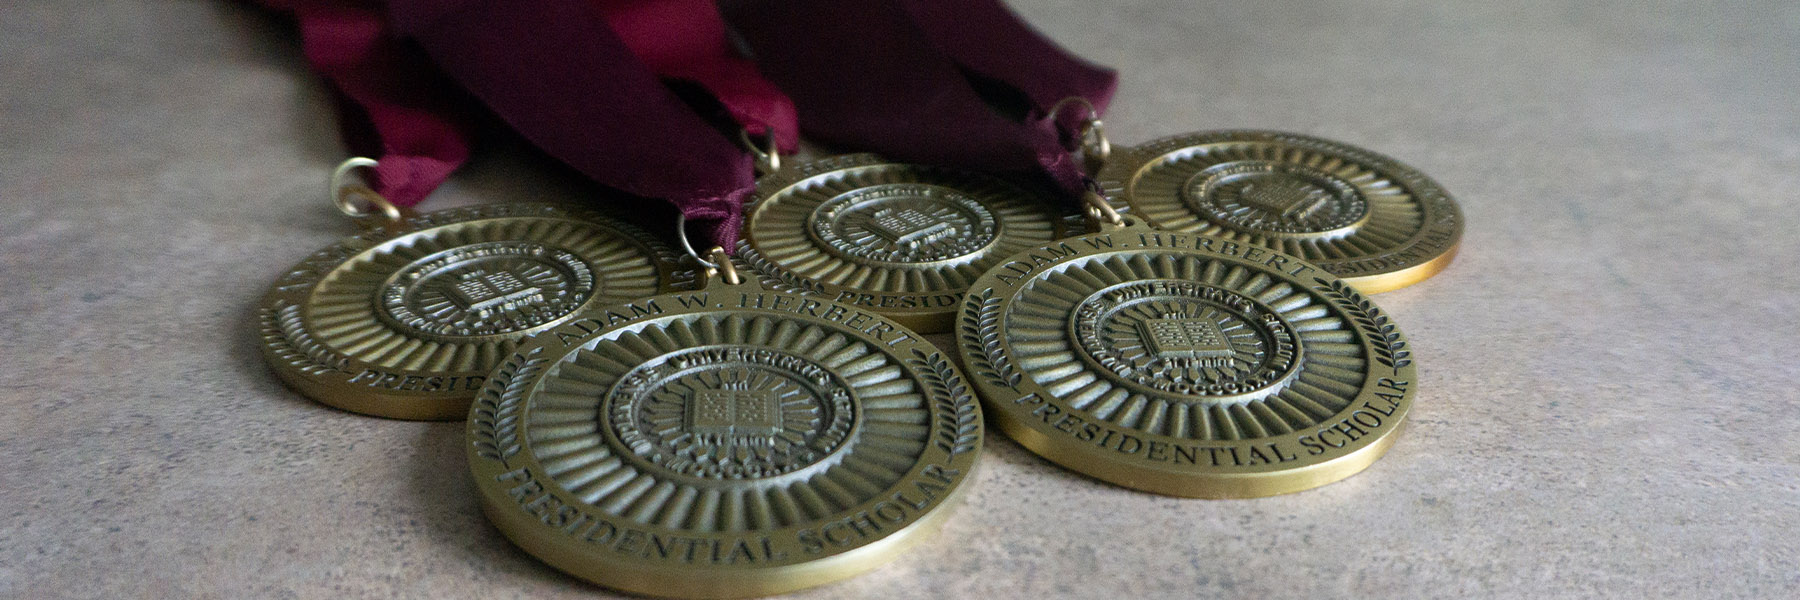 Herbert Presidential Scholars medal